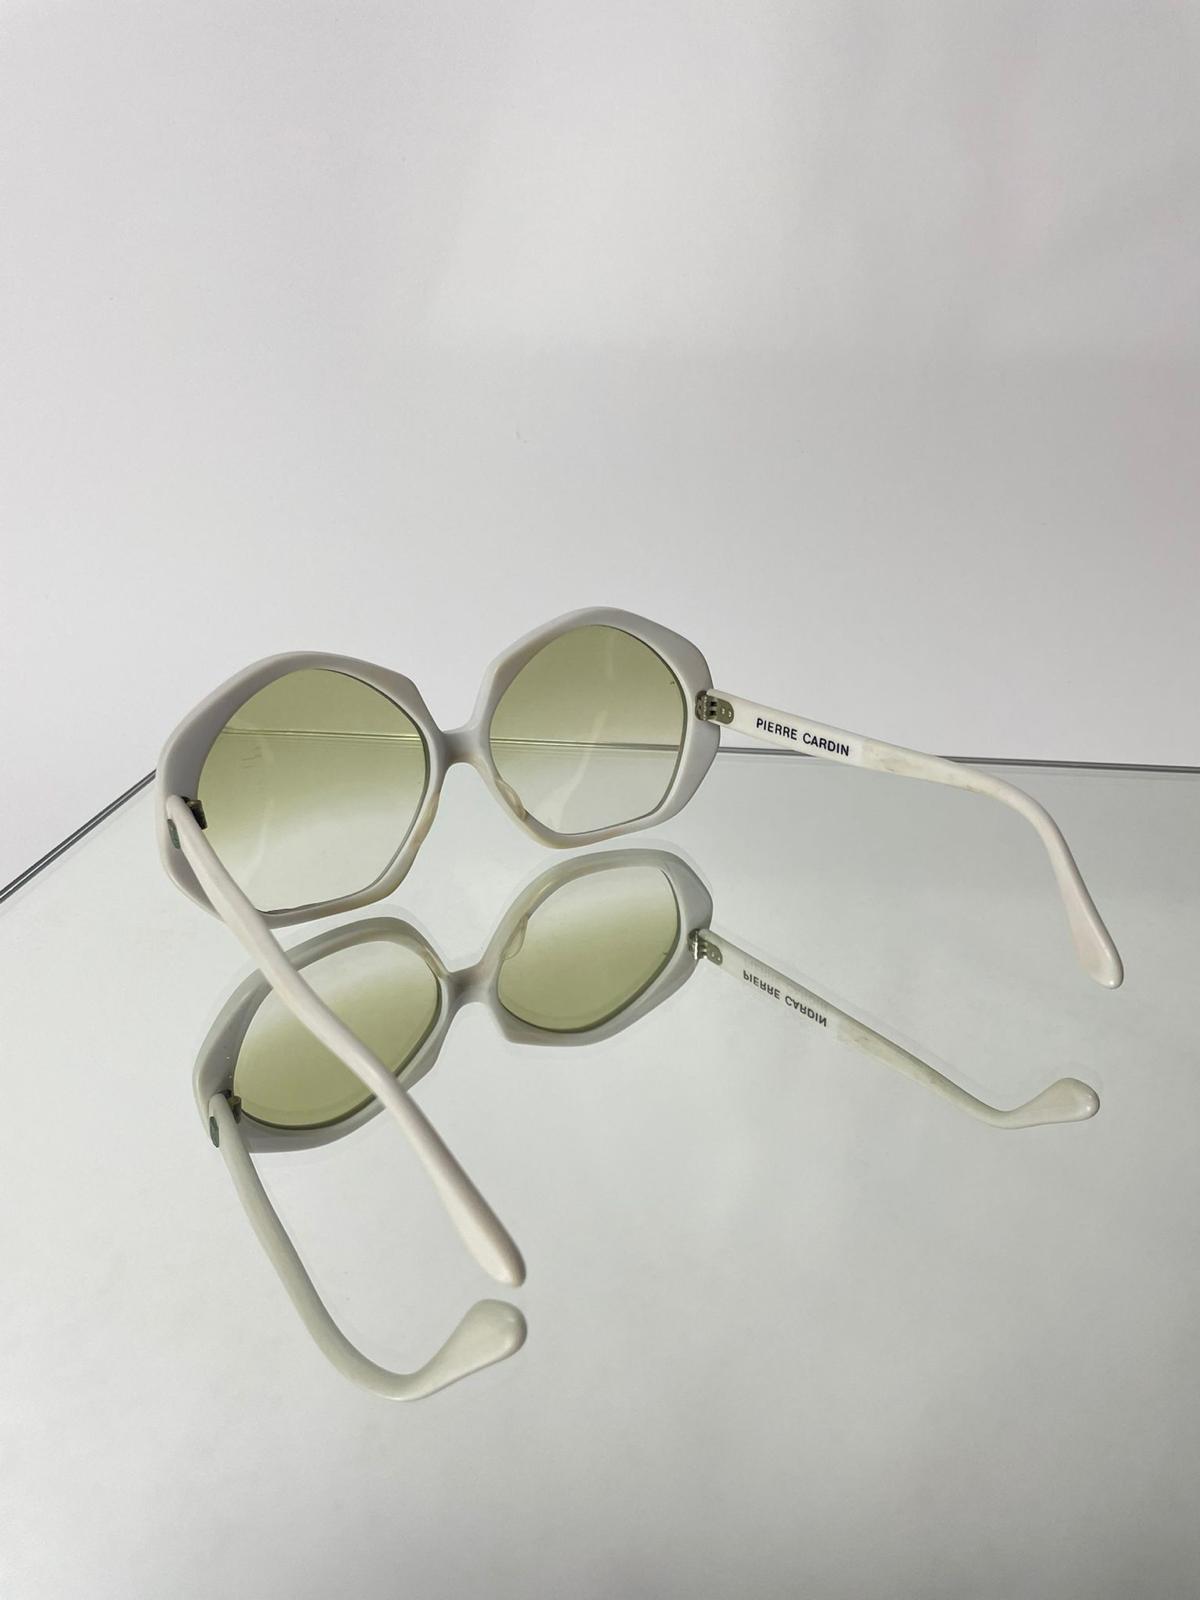 Sunglasses Pierre Cardin 1970s